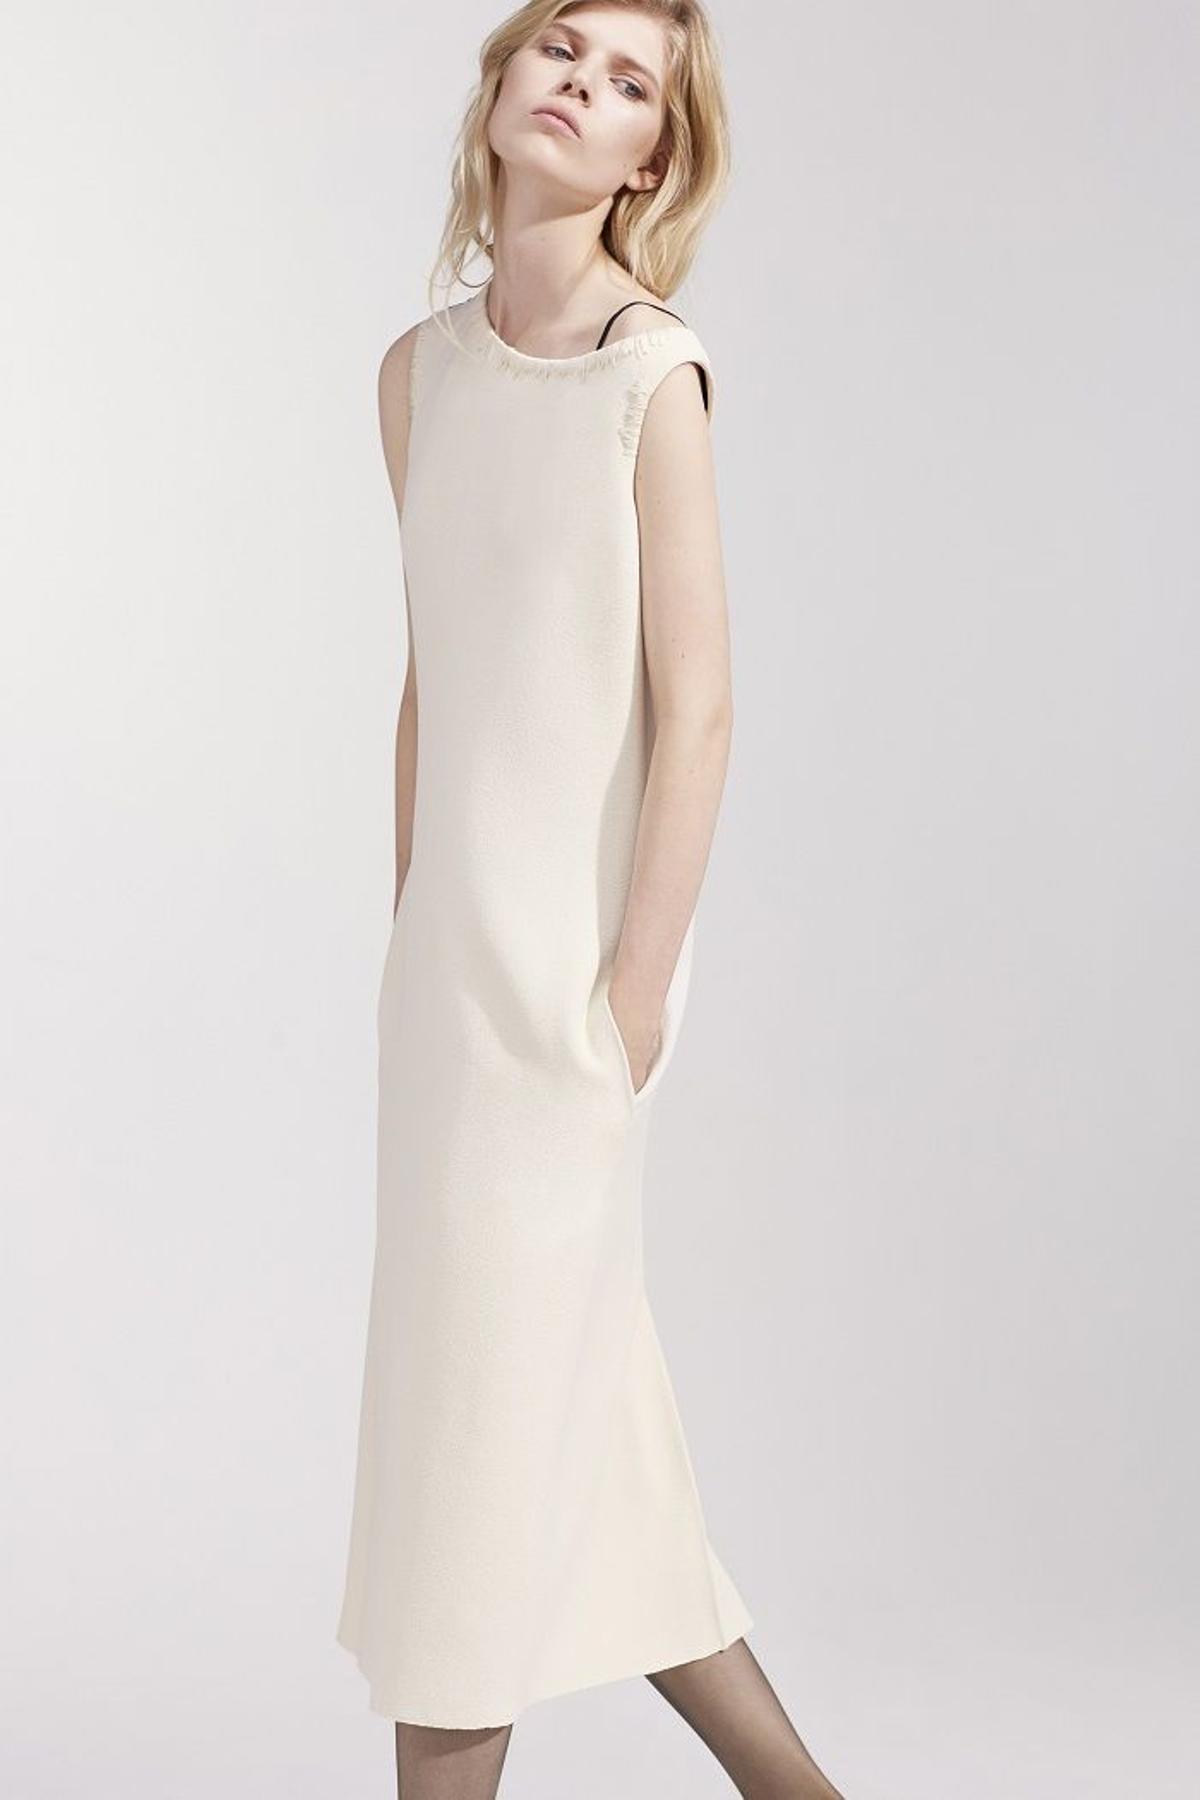 Nina Ricci colección primavera 2016,  vestido beige